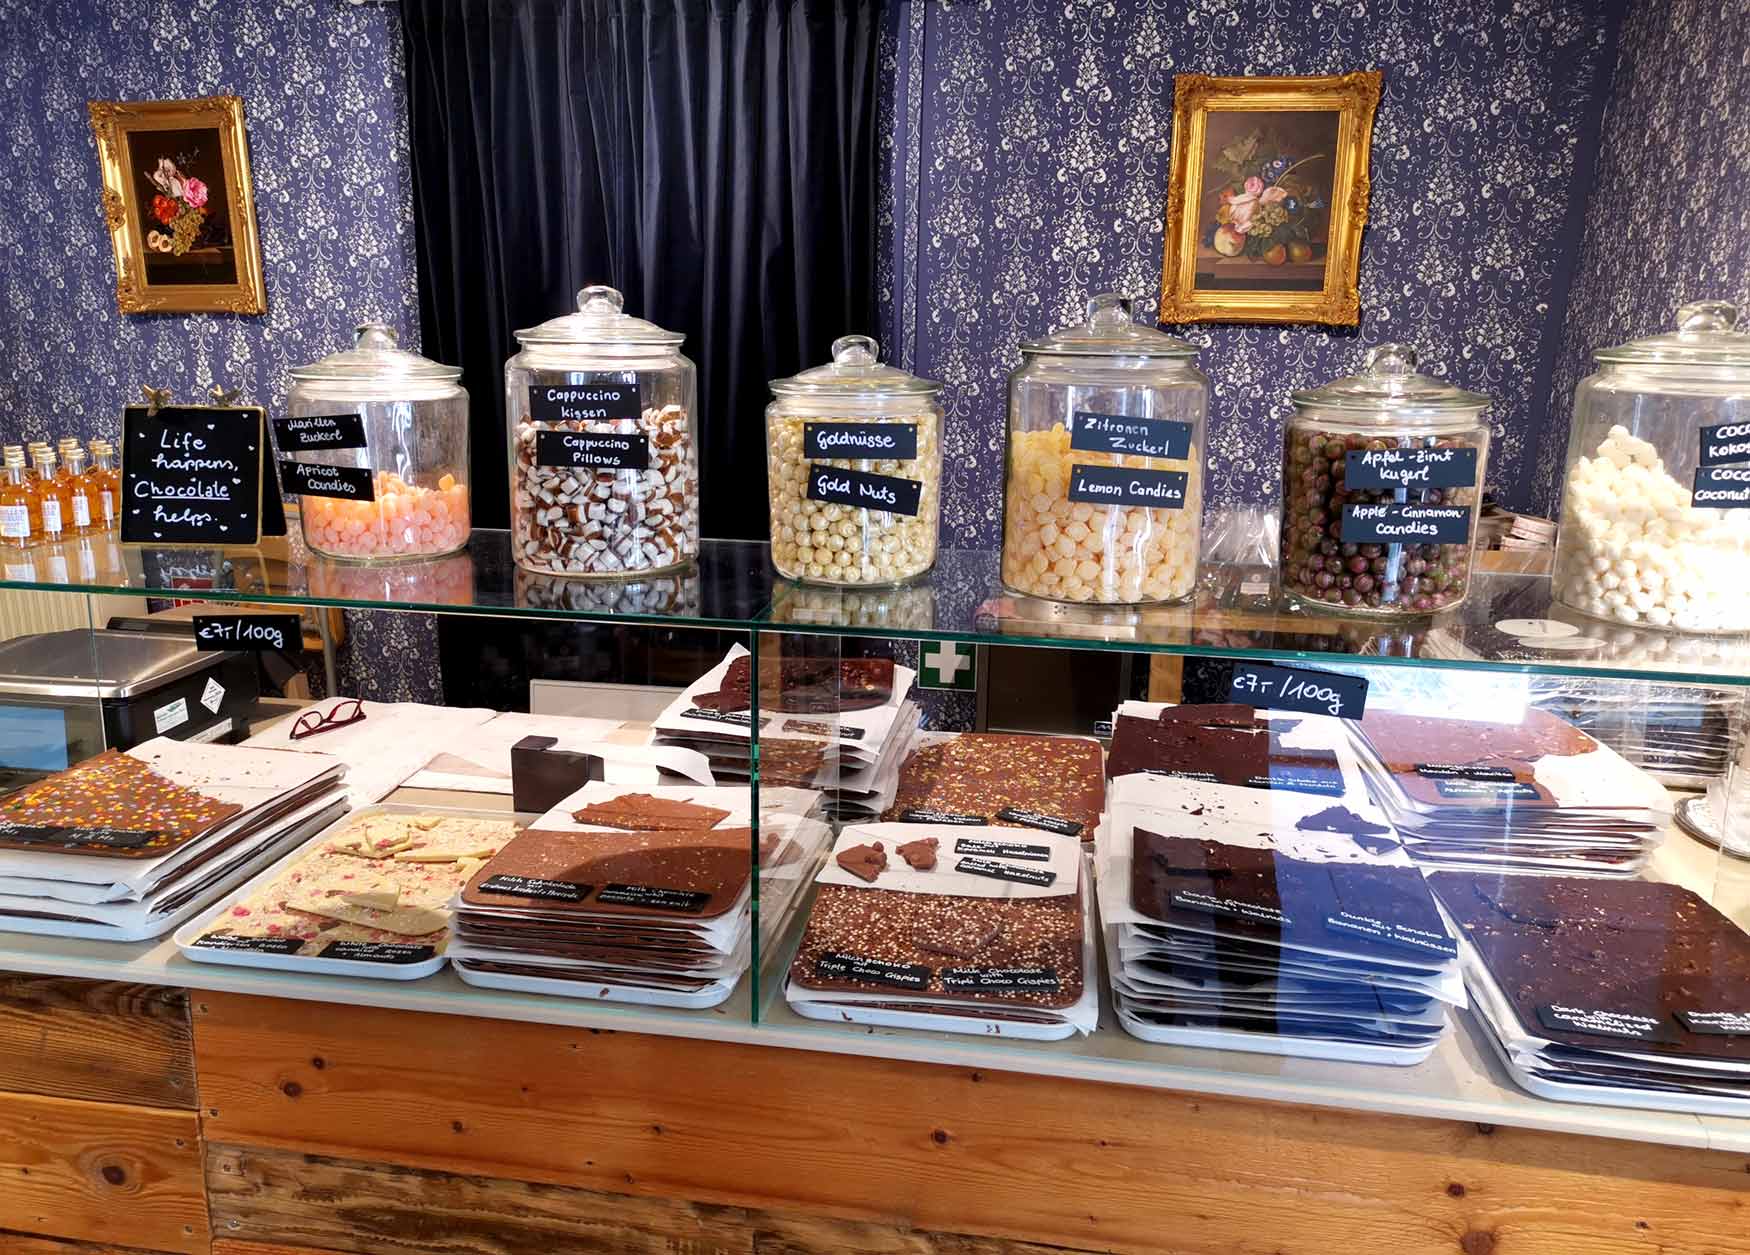 Charlotte Wieser's köstliche Schokoladen in der Wachau. Foto: CulturaLatina